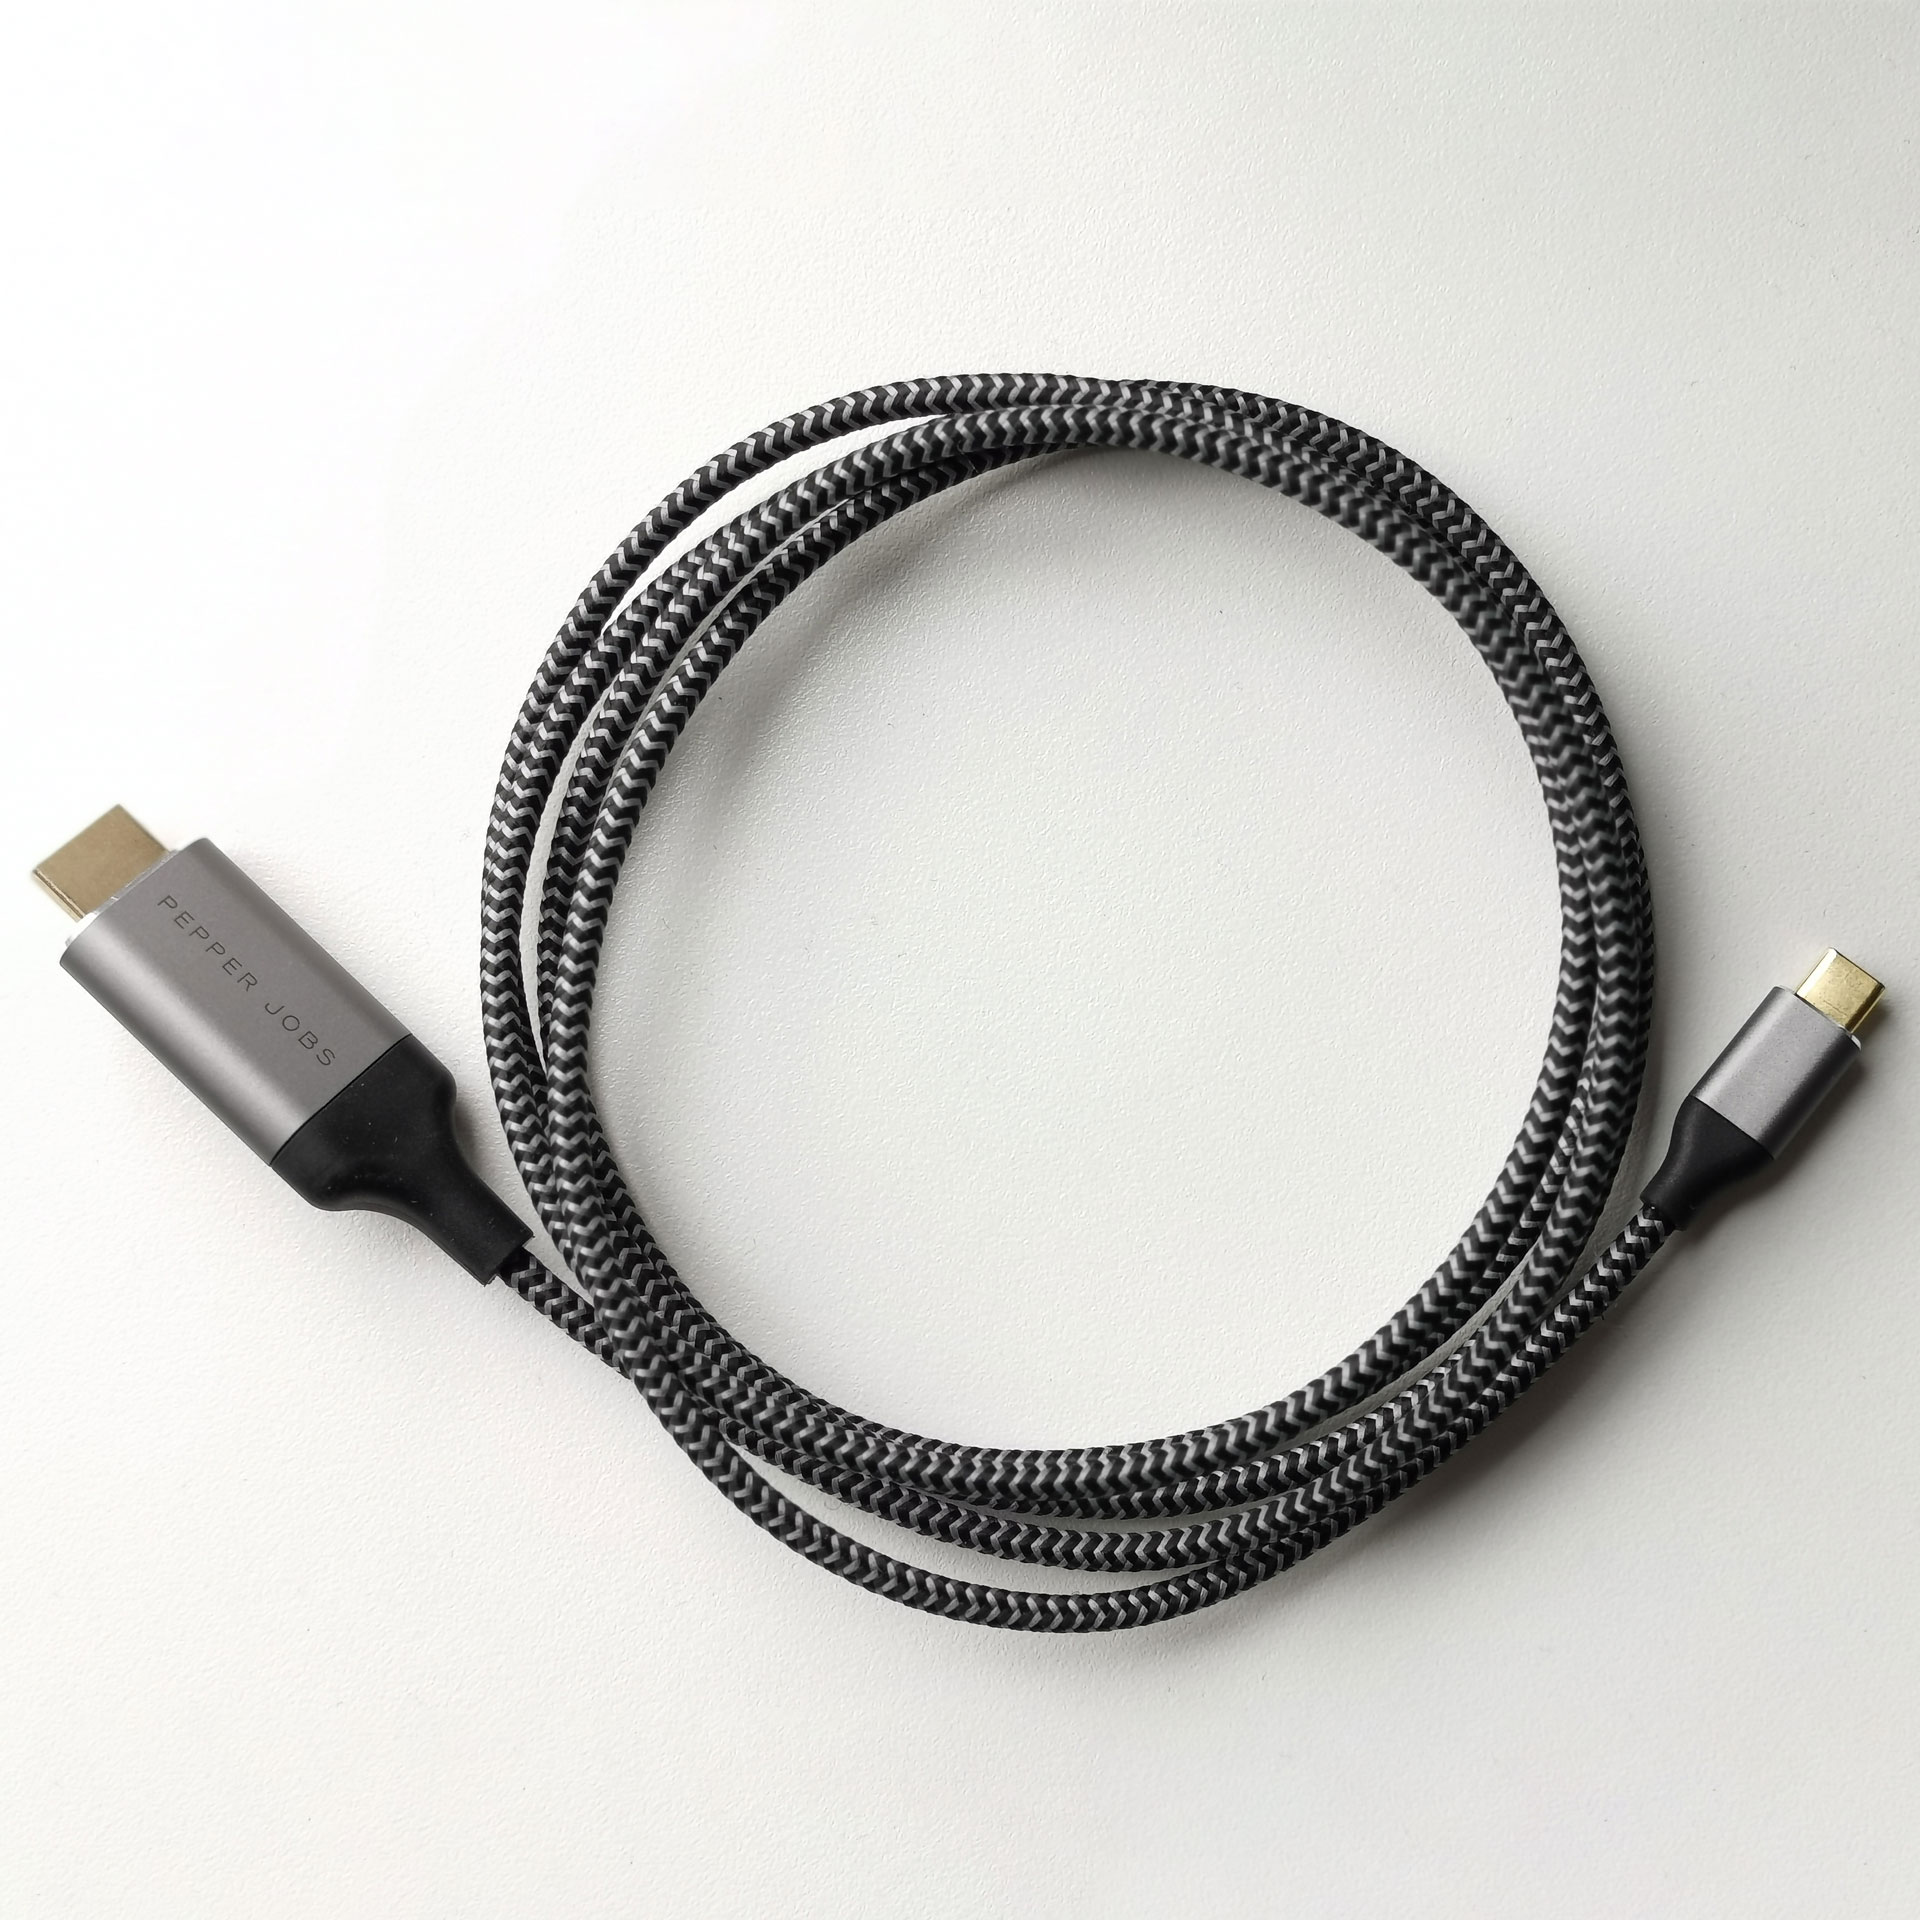 Zo veel baas Herziening DVI naar HDMI kabel aanschaffen? Dit wil je weten! - GadgetGear.nl